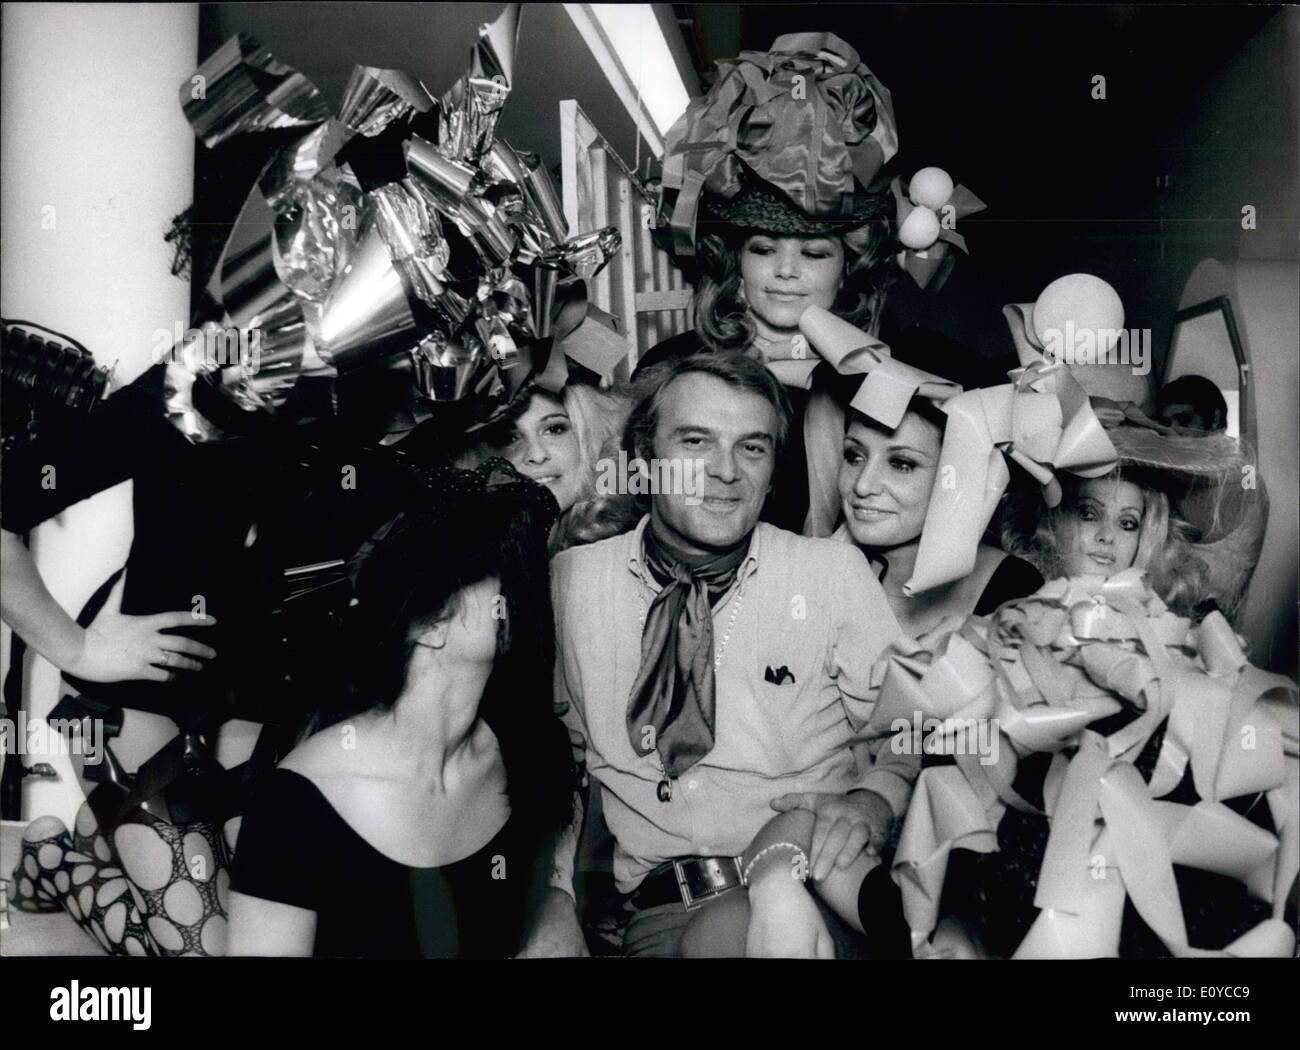 Nov. 11, 1969 - Il ben noto attore italiano Giorgio Albertazzi, famoso per il suo ruolo in "'Dr. Jeckill'' Play TV,. è di dirigere il suo primo film ''Gradiva'' in cui apparirà una folla di belle ragazze.Phot Mostra Giorgio Albertazzi cerchiato dalle belle ragazze. Foto Stock